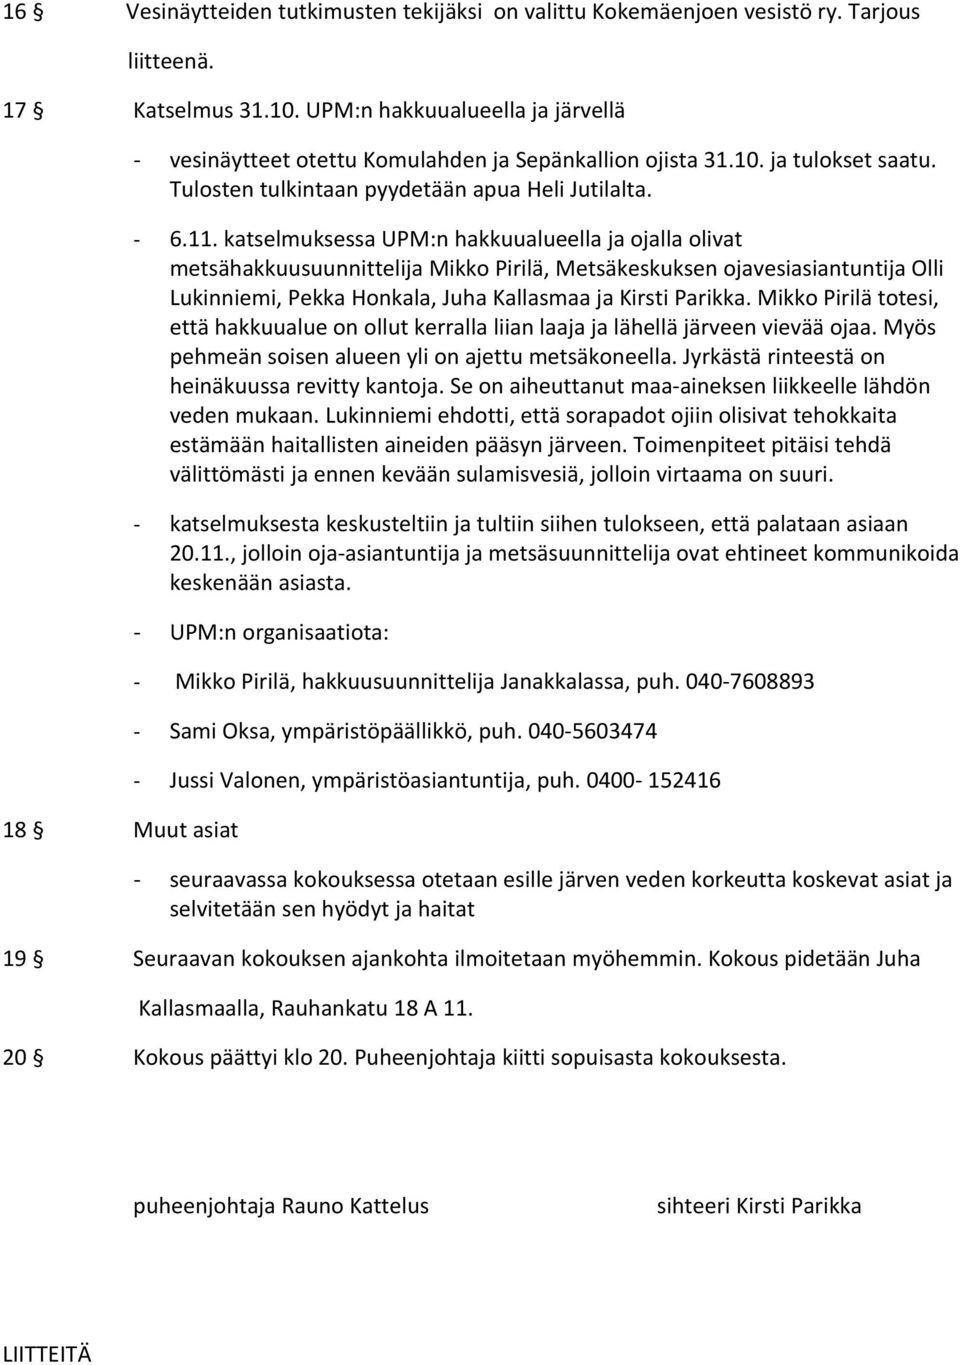 katselmuksessa UPM:n hakkuualueella ja ojalla olivat metsähakkuusuunnittelija Mikko Pirilä, Metsäkeskuksen ojavesiasiantuntija Olli Lukinniemi, Pekka Honkala, Juha Kallasmaa ja Kirsti Parikka.